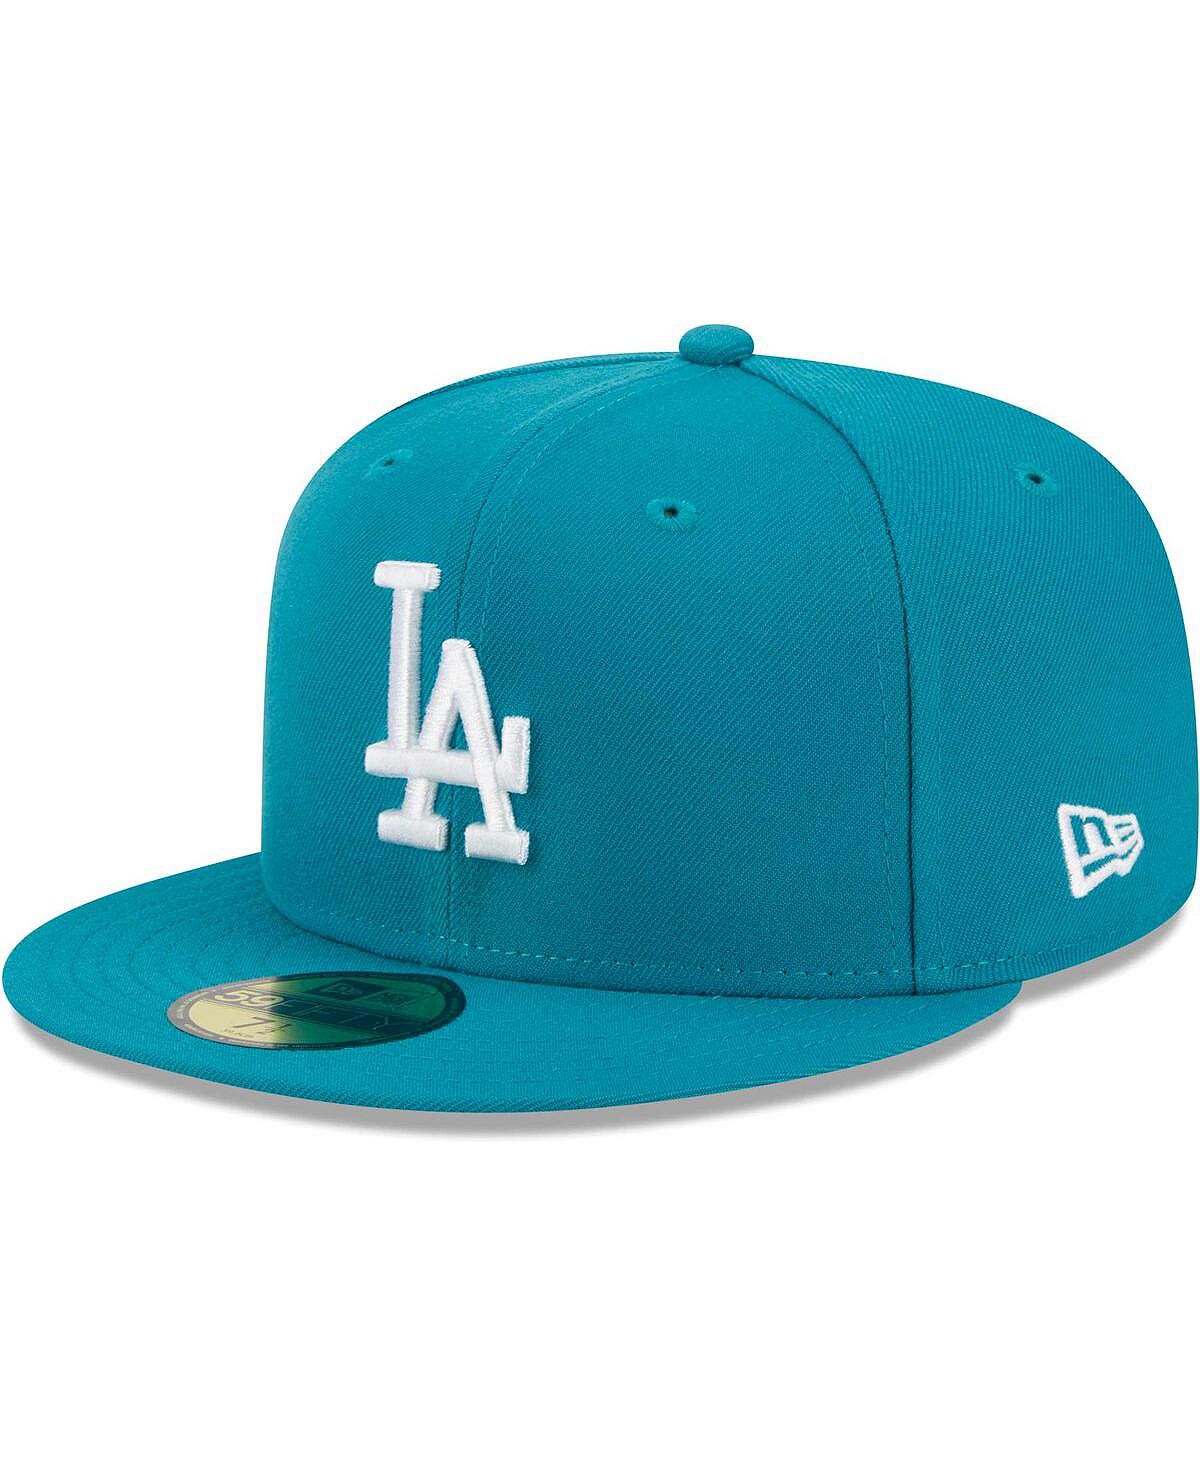 Мужская приталенная кепка Los Angeles Dodgers 59FIFTY бирюзового цвета New Era